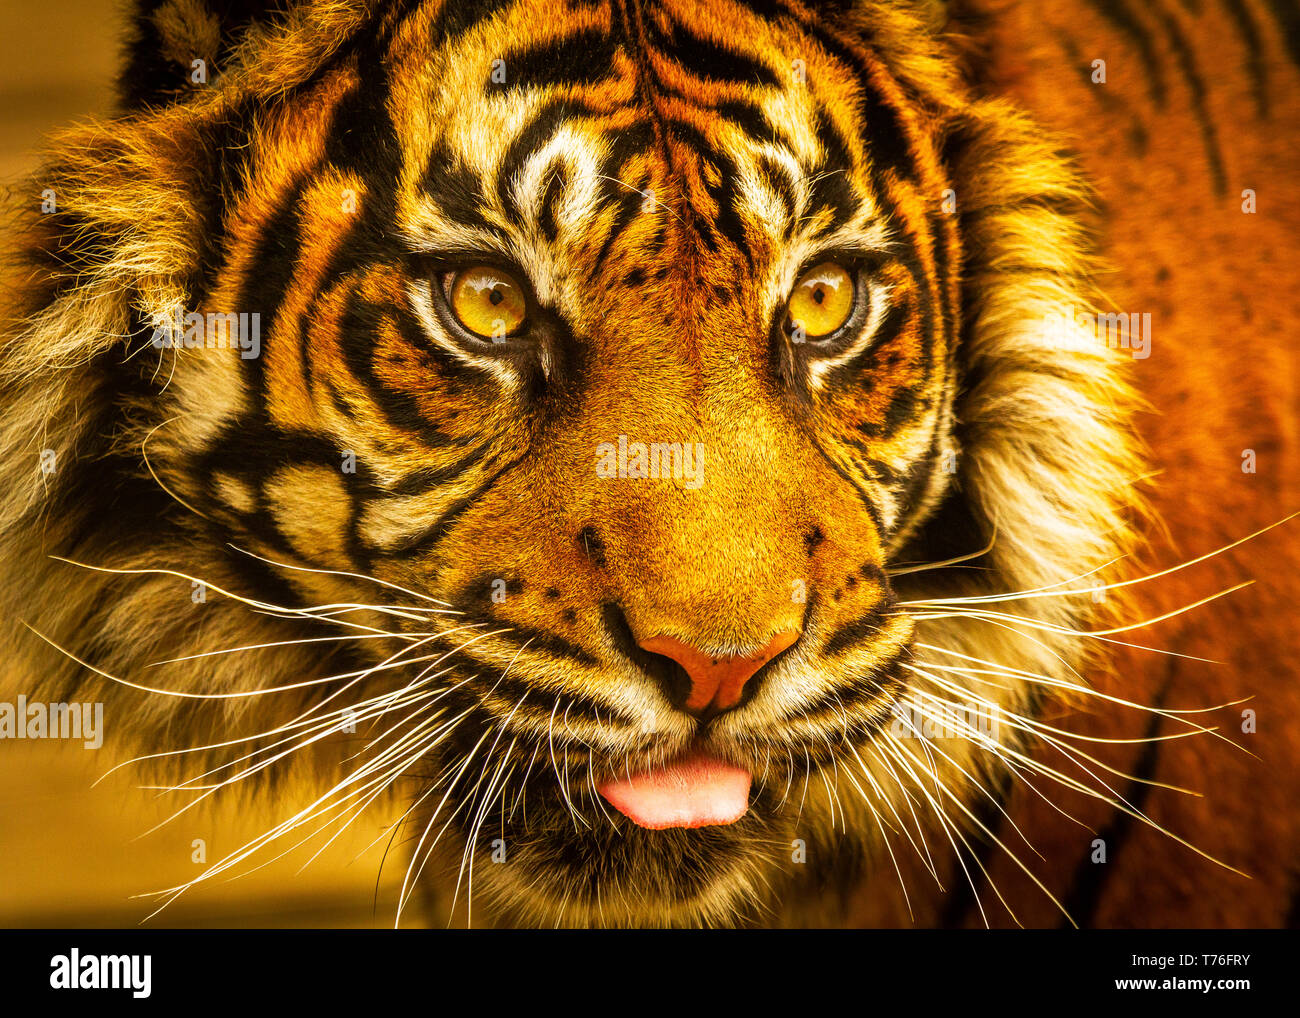 Tiger (Sumatran) / Panthera tigris sumatrae at Dudley Zoo UK Stock Photo